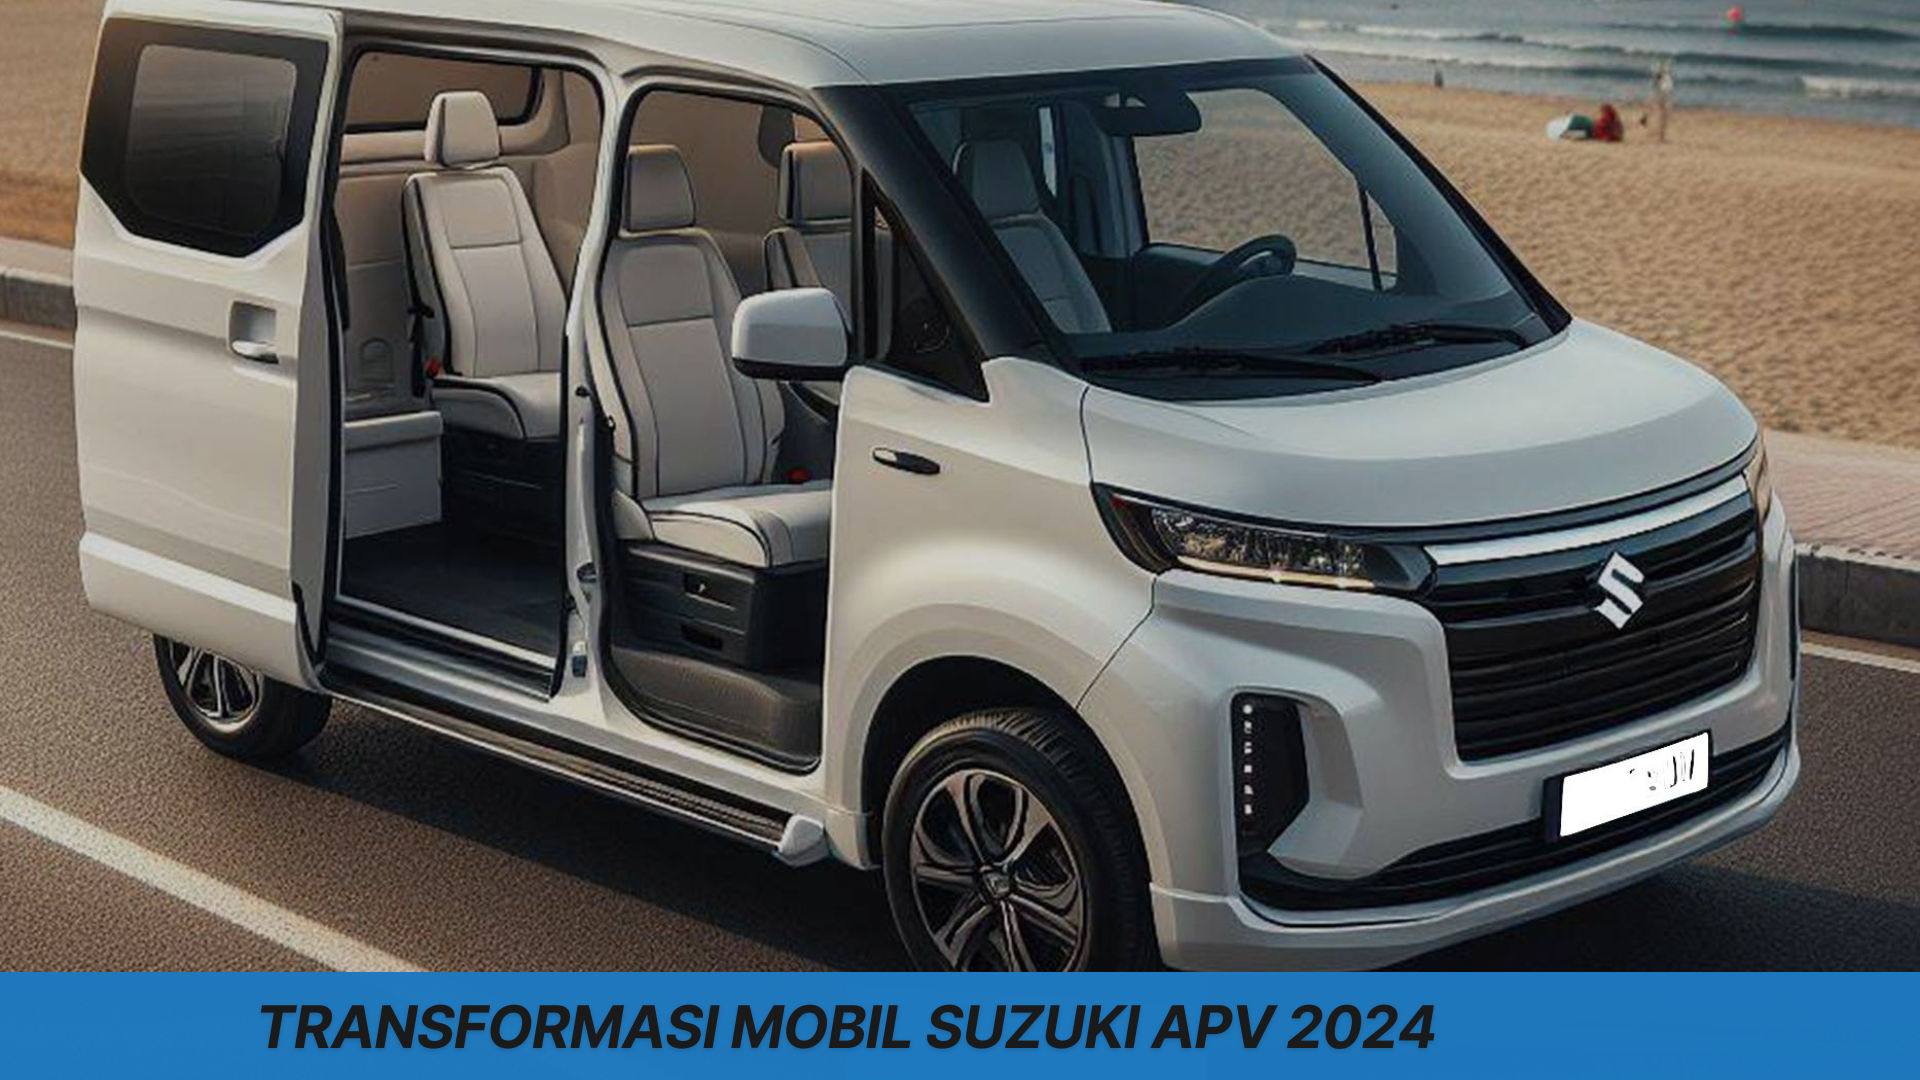 Transformasi Total Mobil Suzuki APV 2024, Tampilan Lebih Besar dan Mewah Bikin Gran Max Was-Was